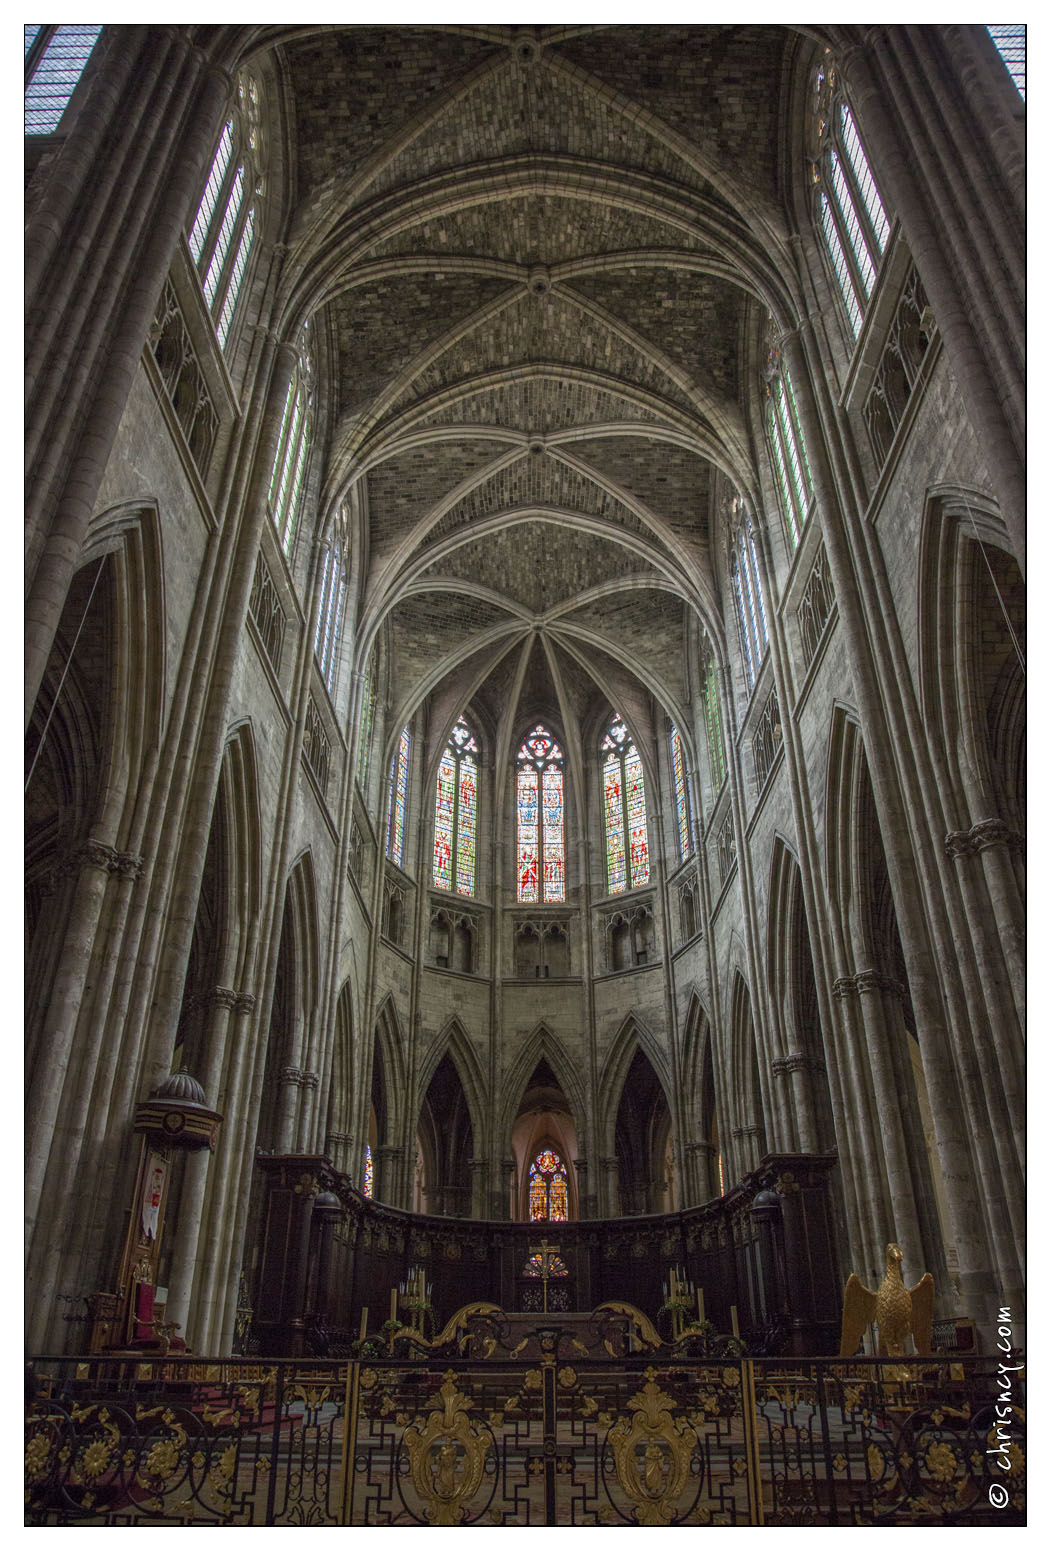 20140828-025_5752-Bordeaux_Cathedrale_Saint_Andre.jpg